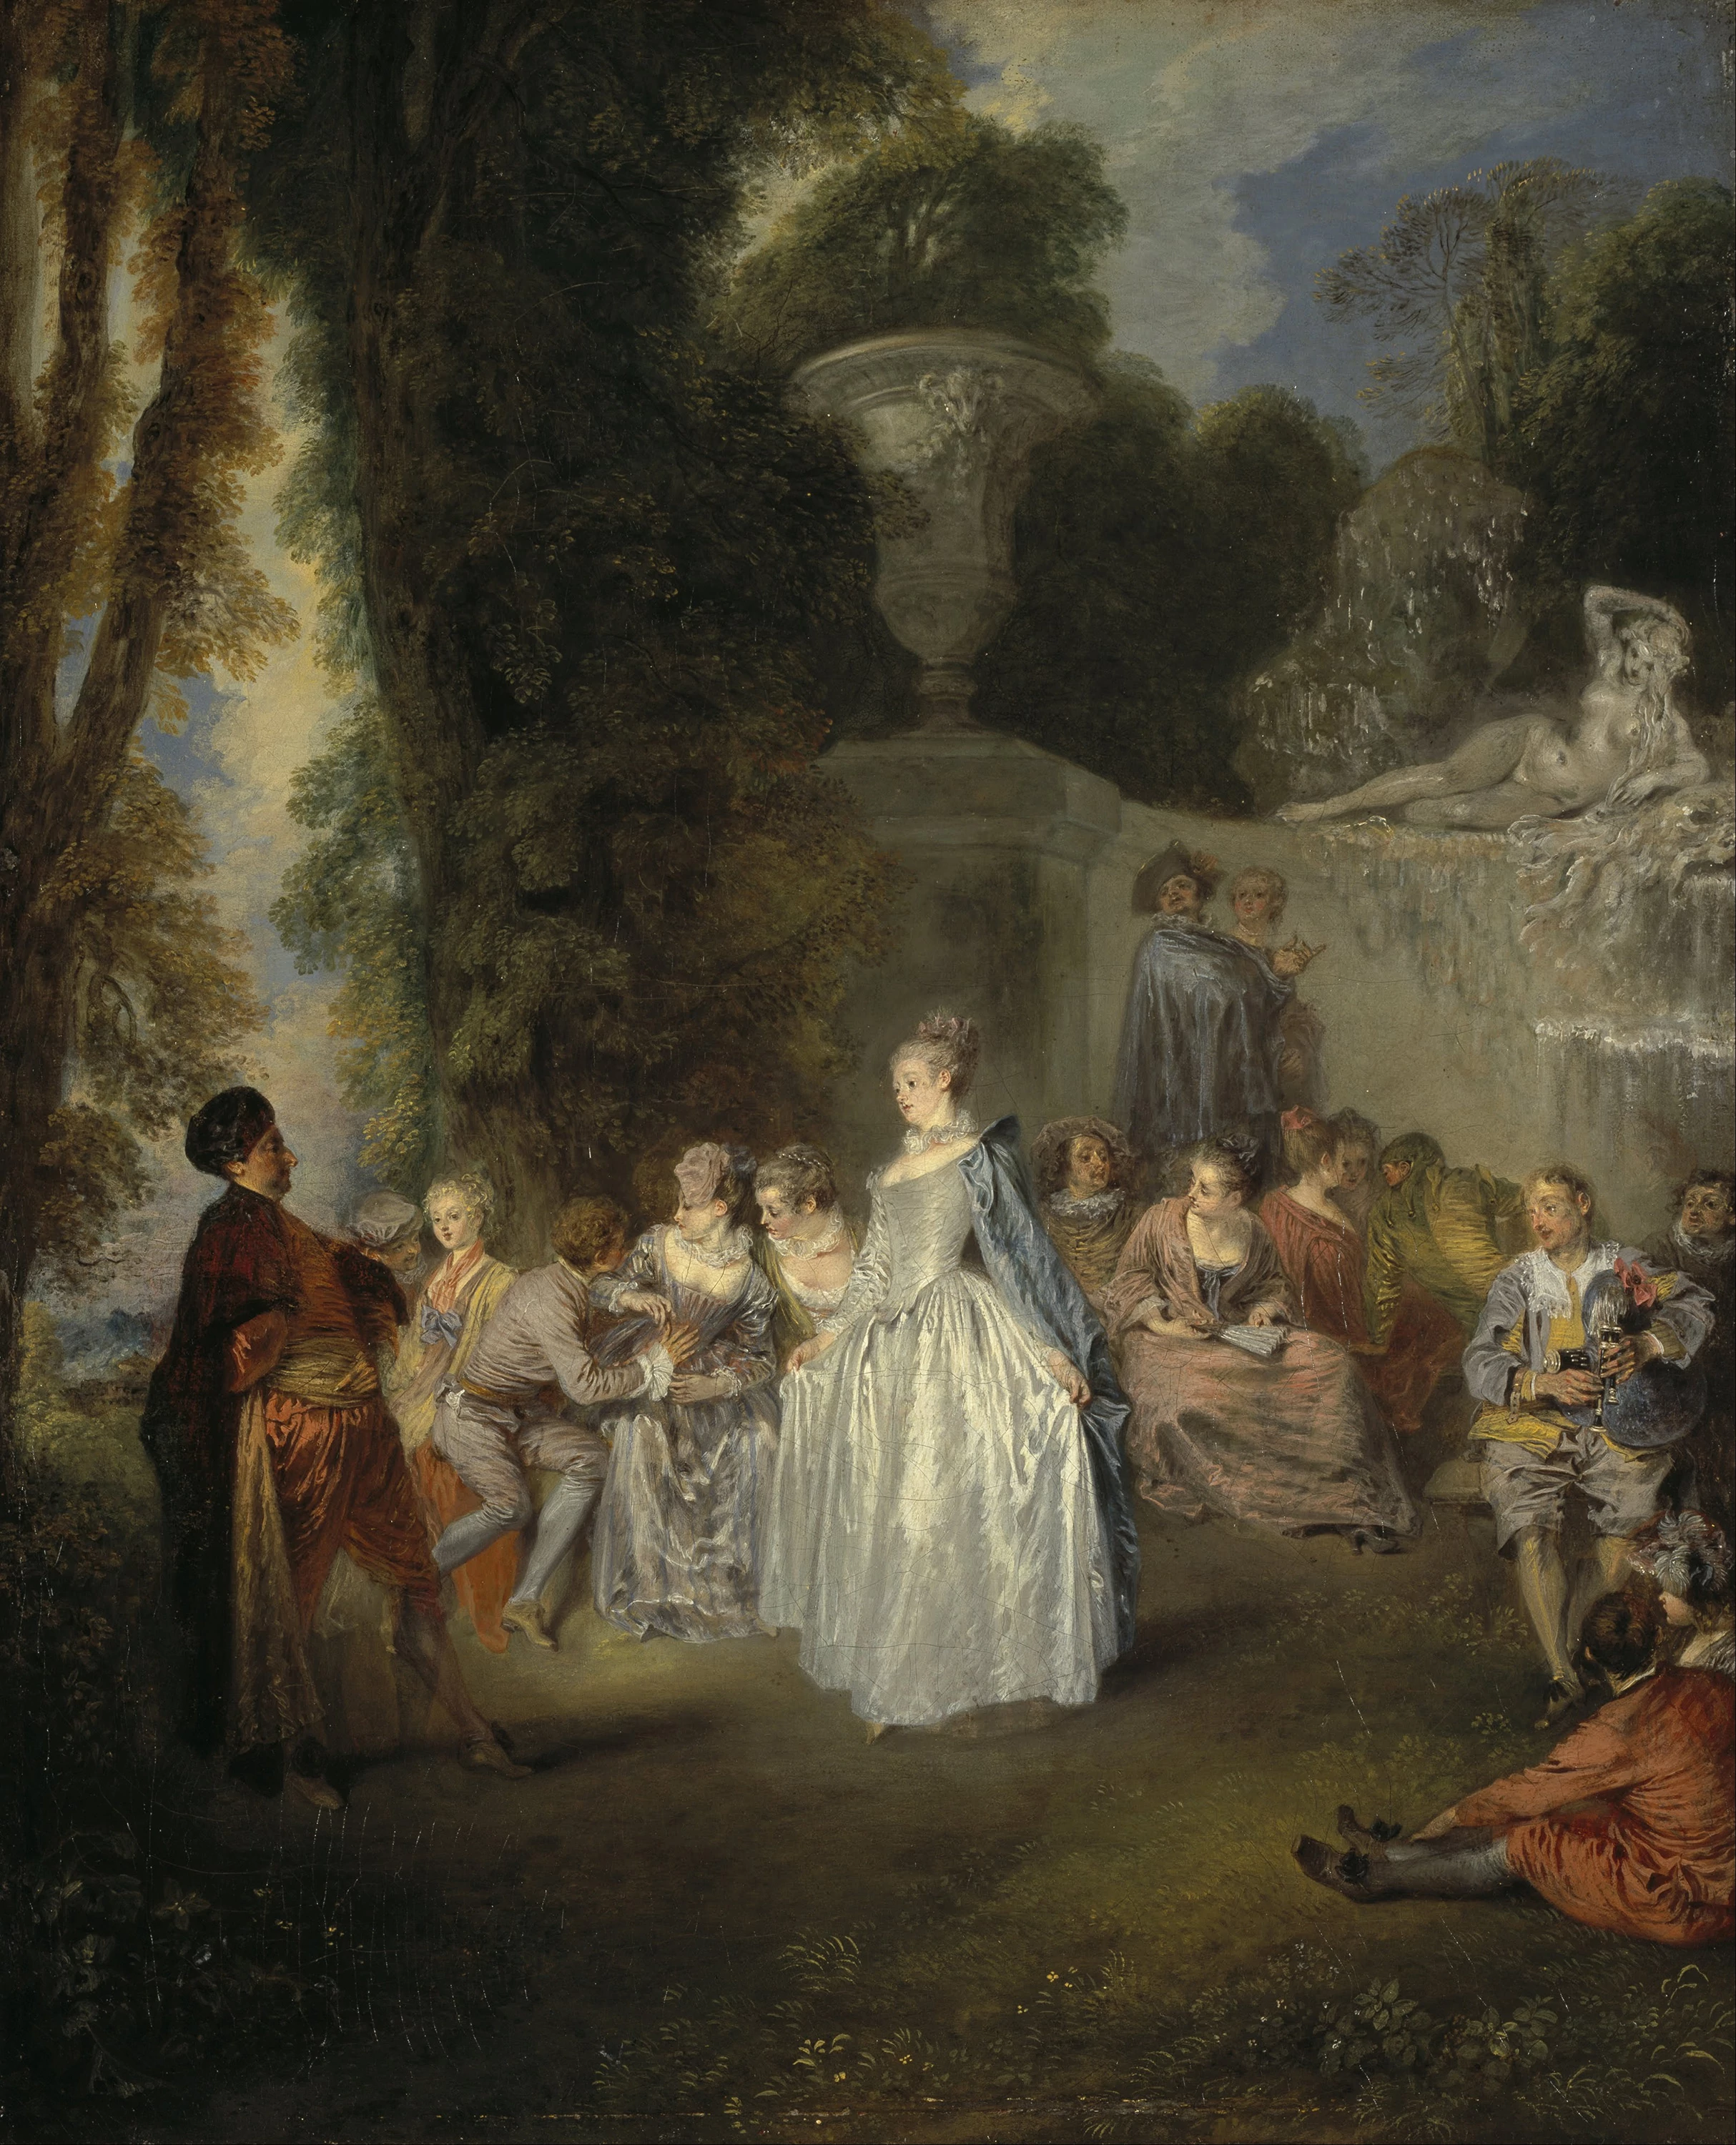 Jean-Antoine Watteau, The Artists